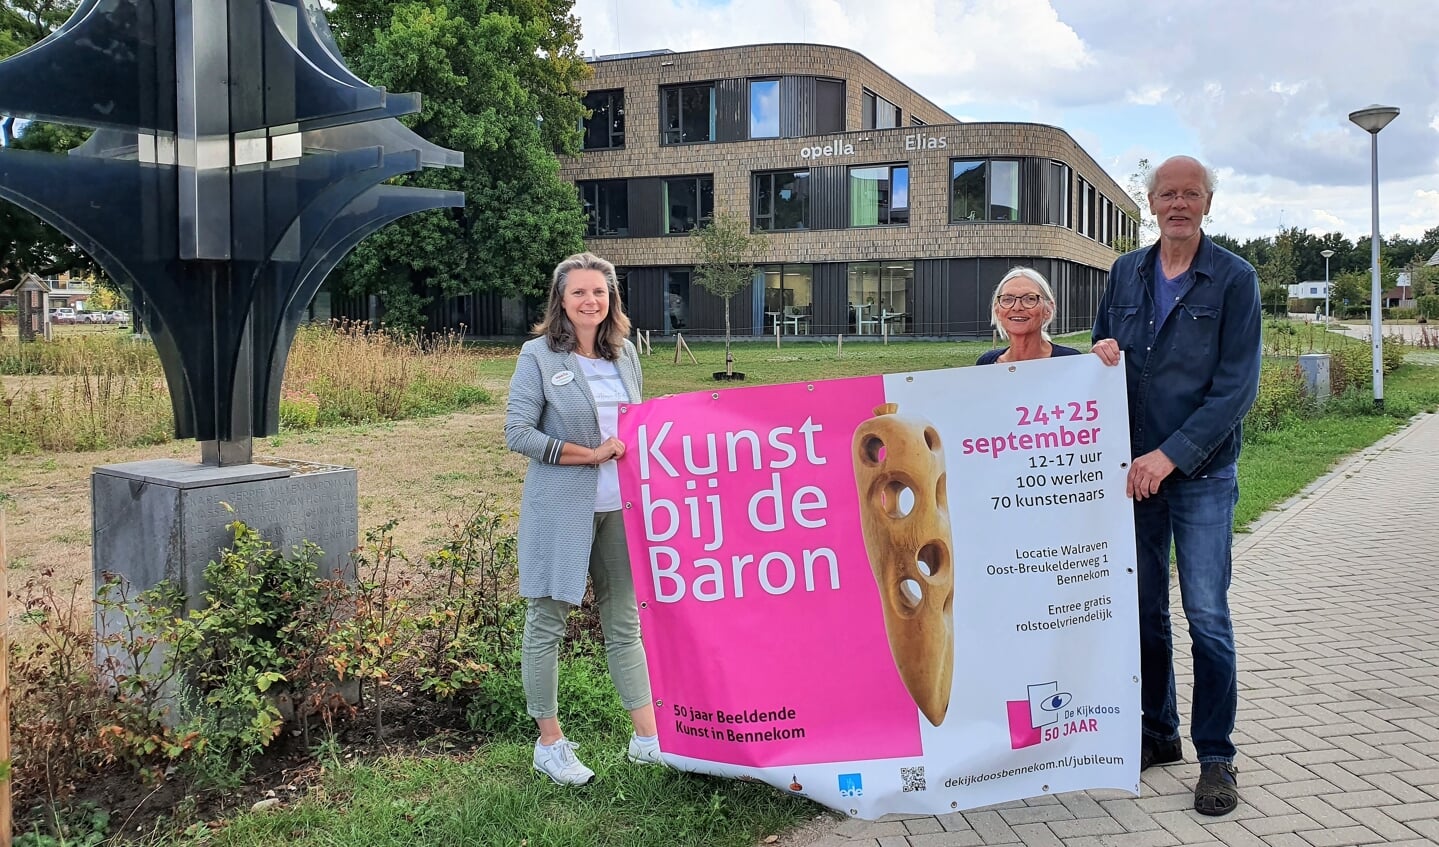 Simone Vleeming (Opella), Nicole Bischoff en Cees van Beukering (De Kijkdoos) -vlnr- zijn blij met en trots op de bijzondere expositie 'Kunst bij de Baron' op 24 en 25 september.